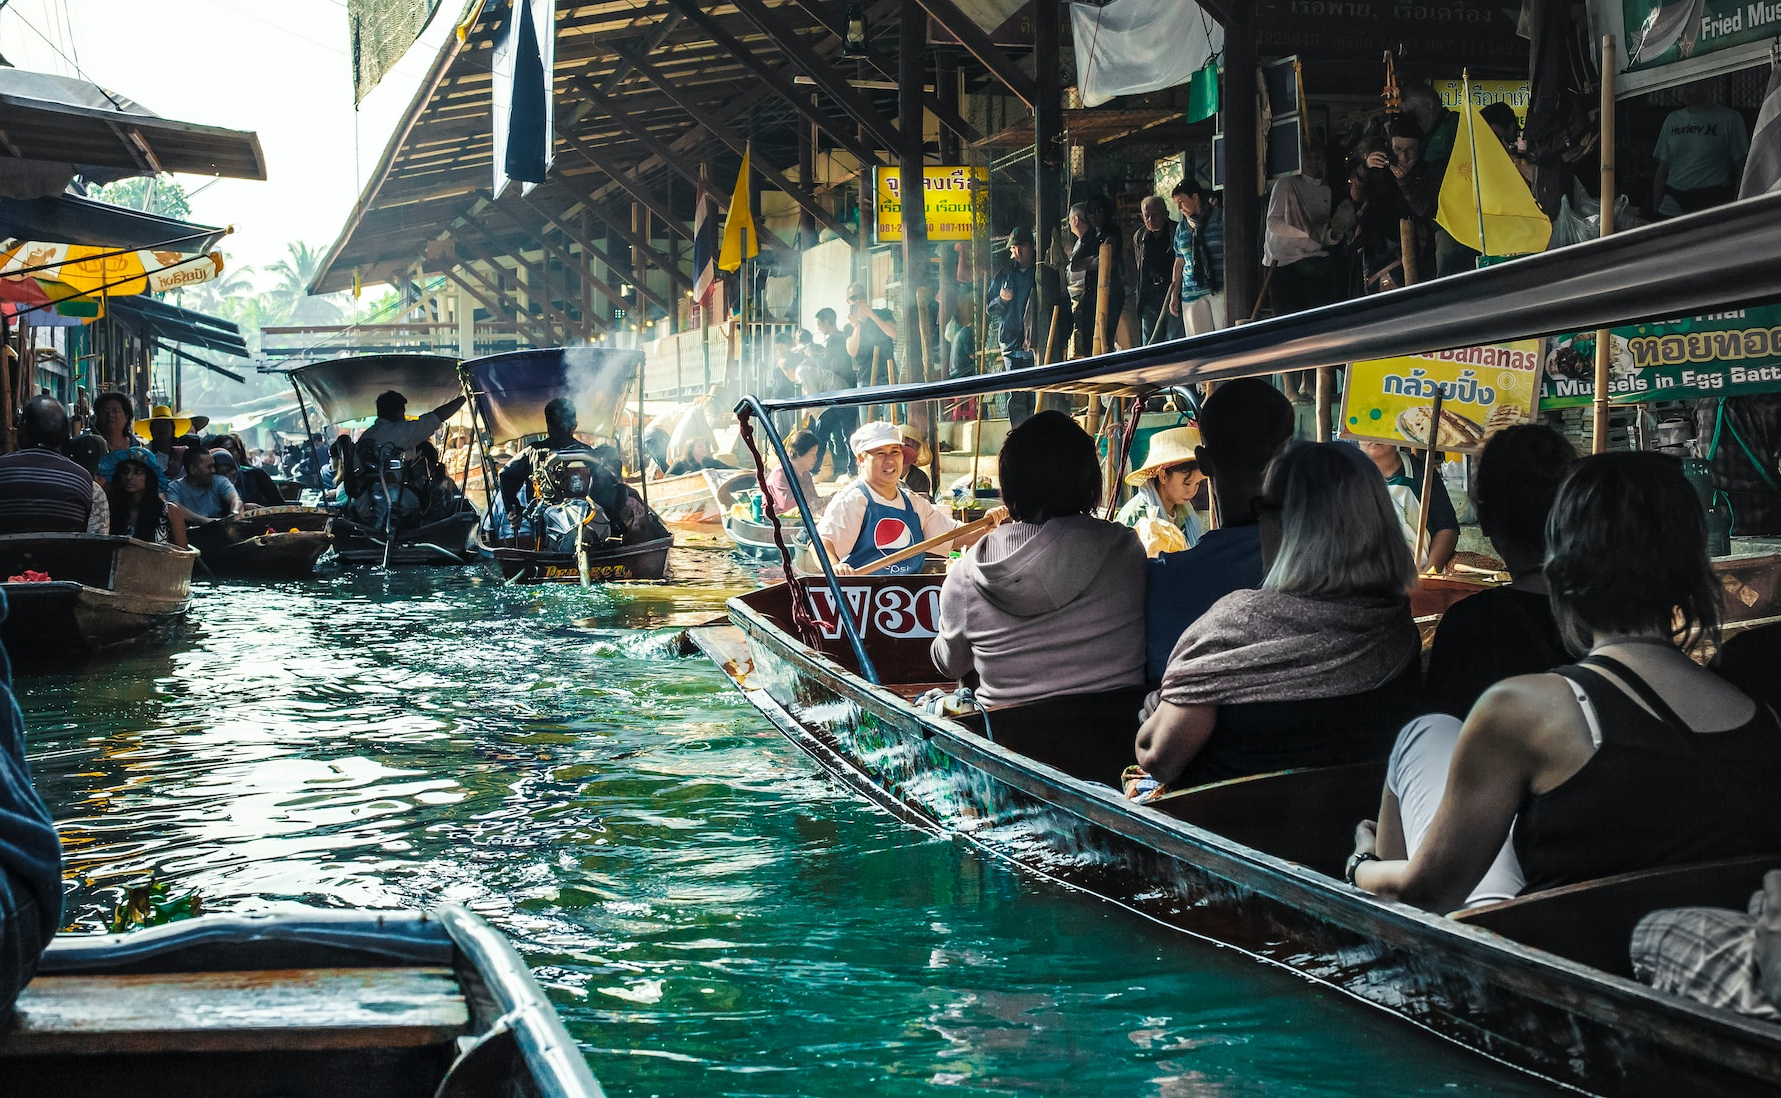 Gruppe af mennesker sejler ned ad en kanal i Thailand i en båd som en del af deres lokale transportoplevelse